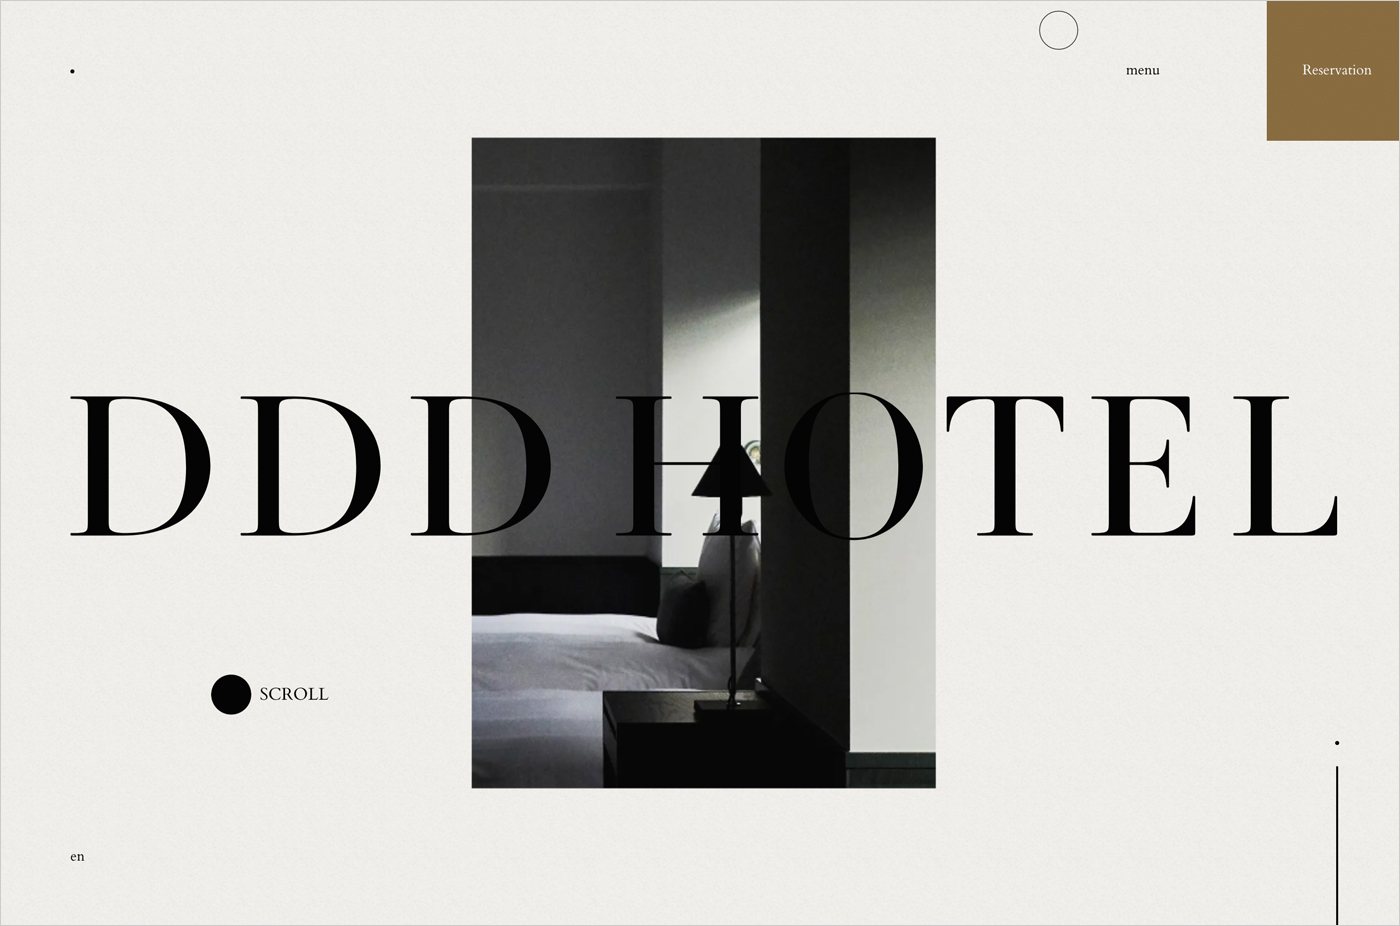 DDD HOTELウェブサイトの画面キャプチャ画像